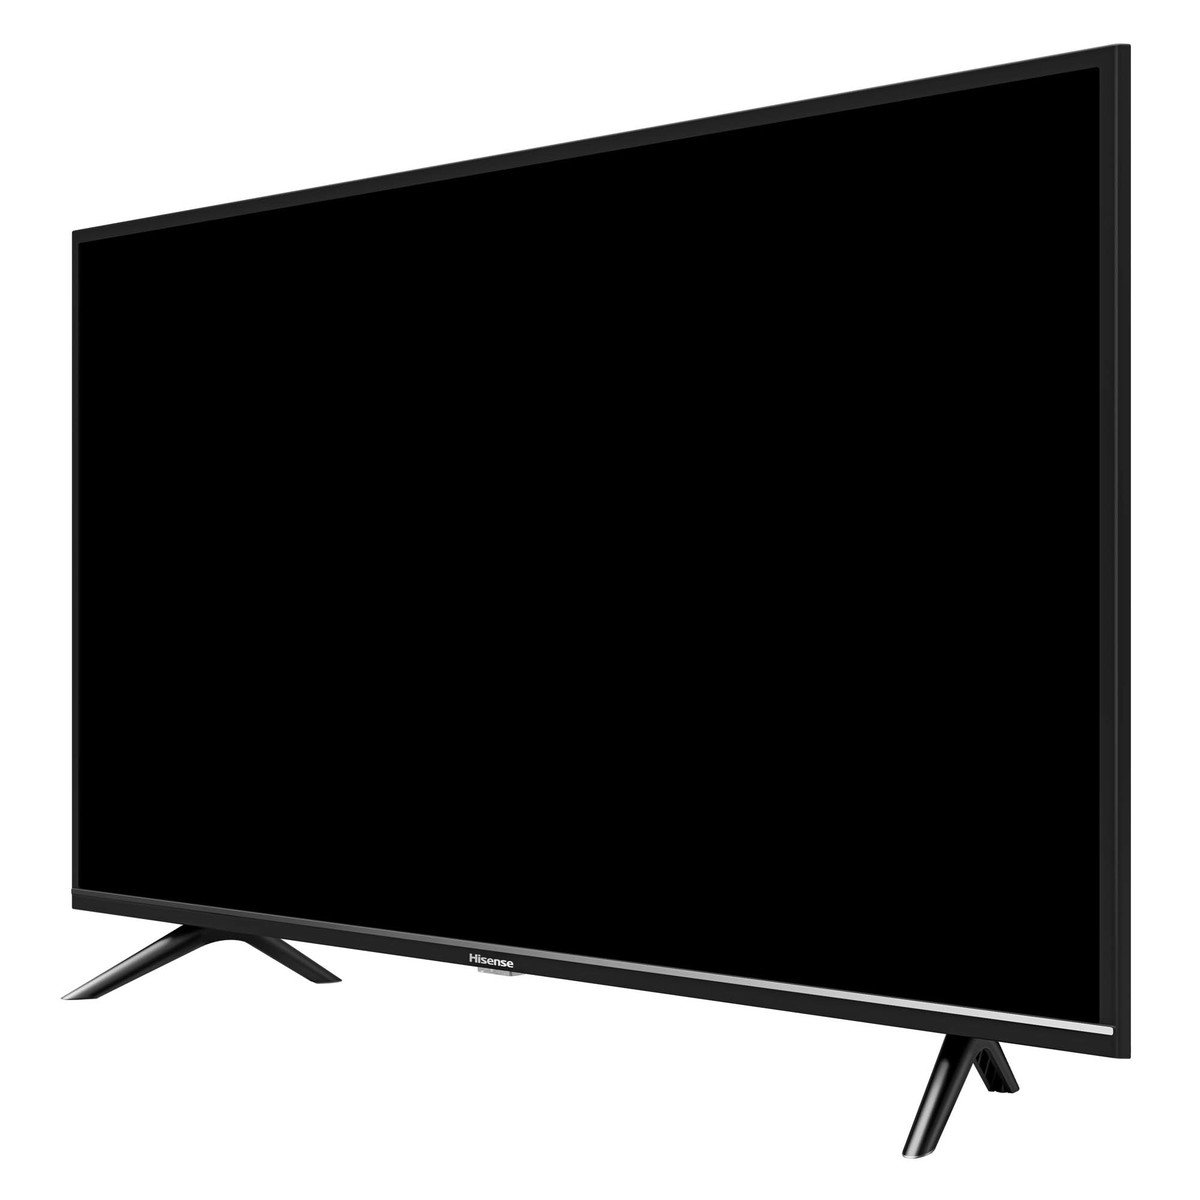 هيسينس شاشة تلفزيون ذكية عالية الدقة إل إي دي 43 بوصة 43B6000PW